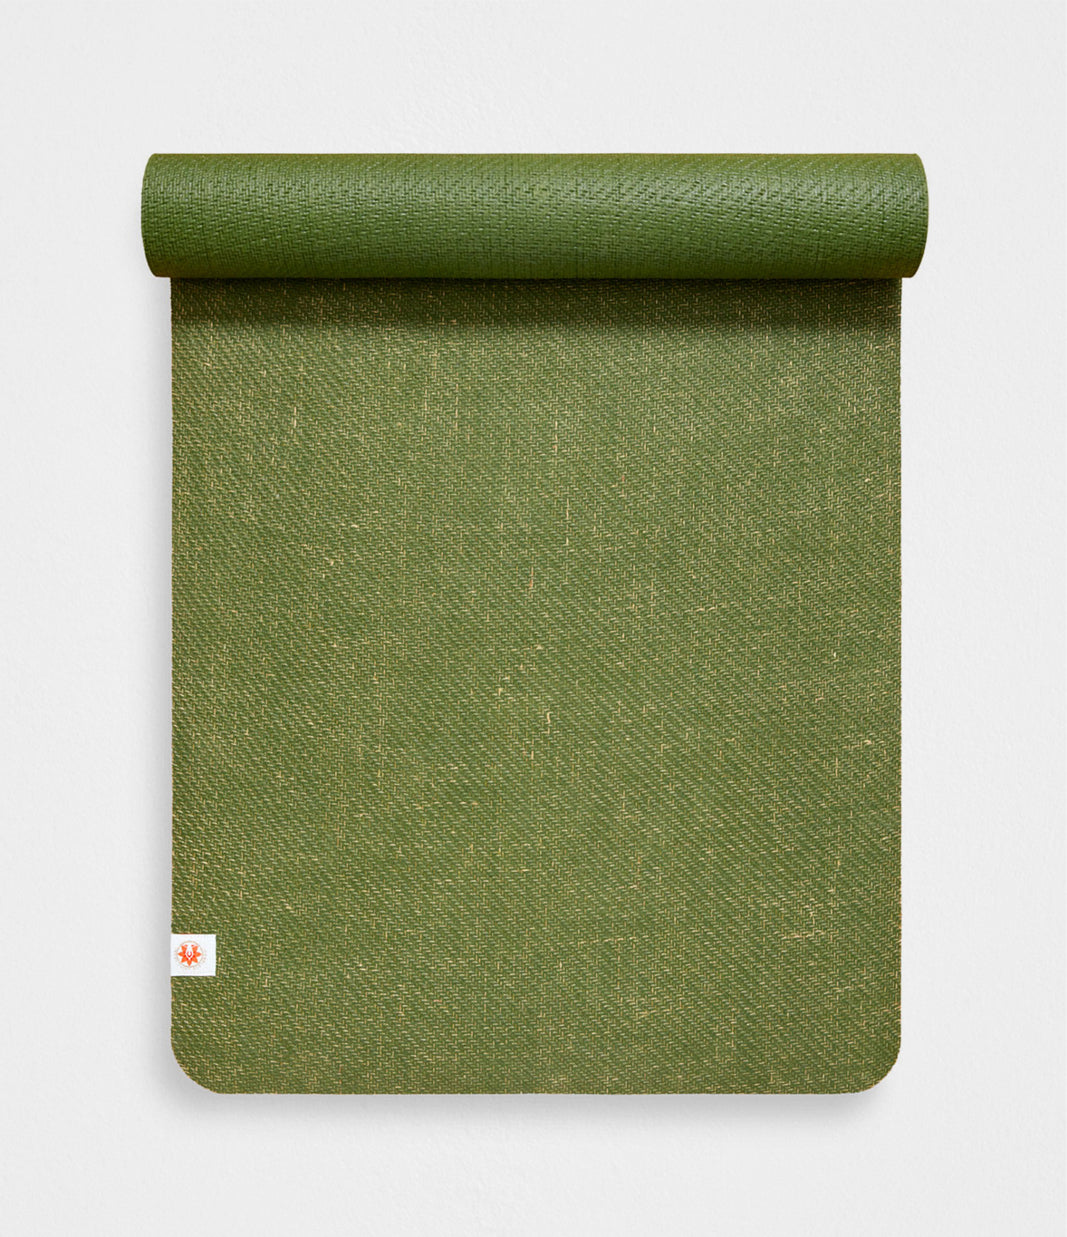 4mm Biodegradable Yoga Mat ~ Forest Green - Nor–Folk